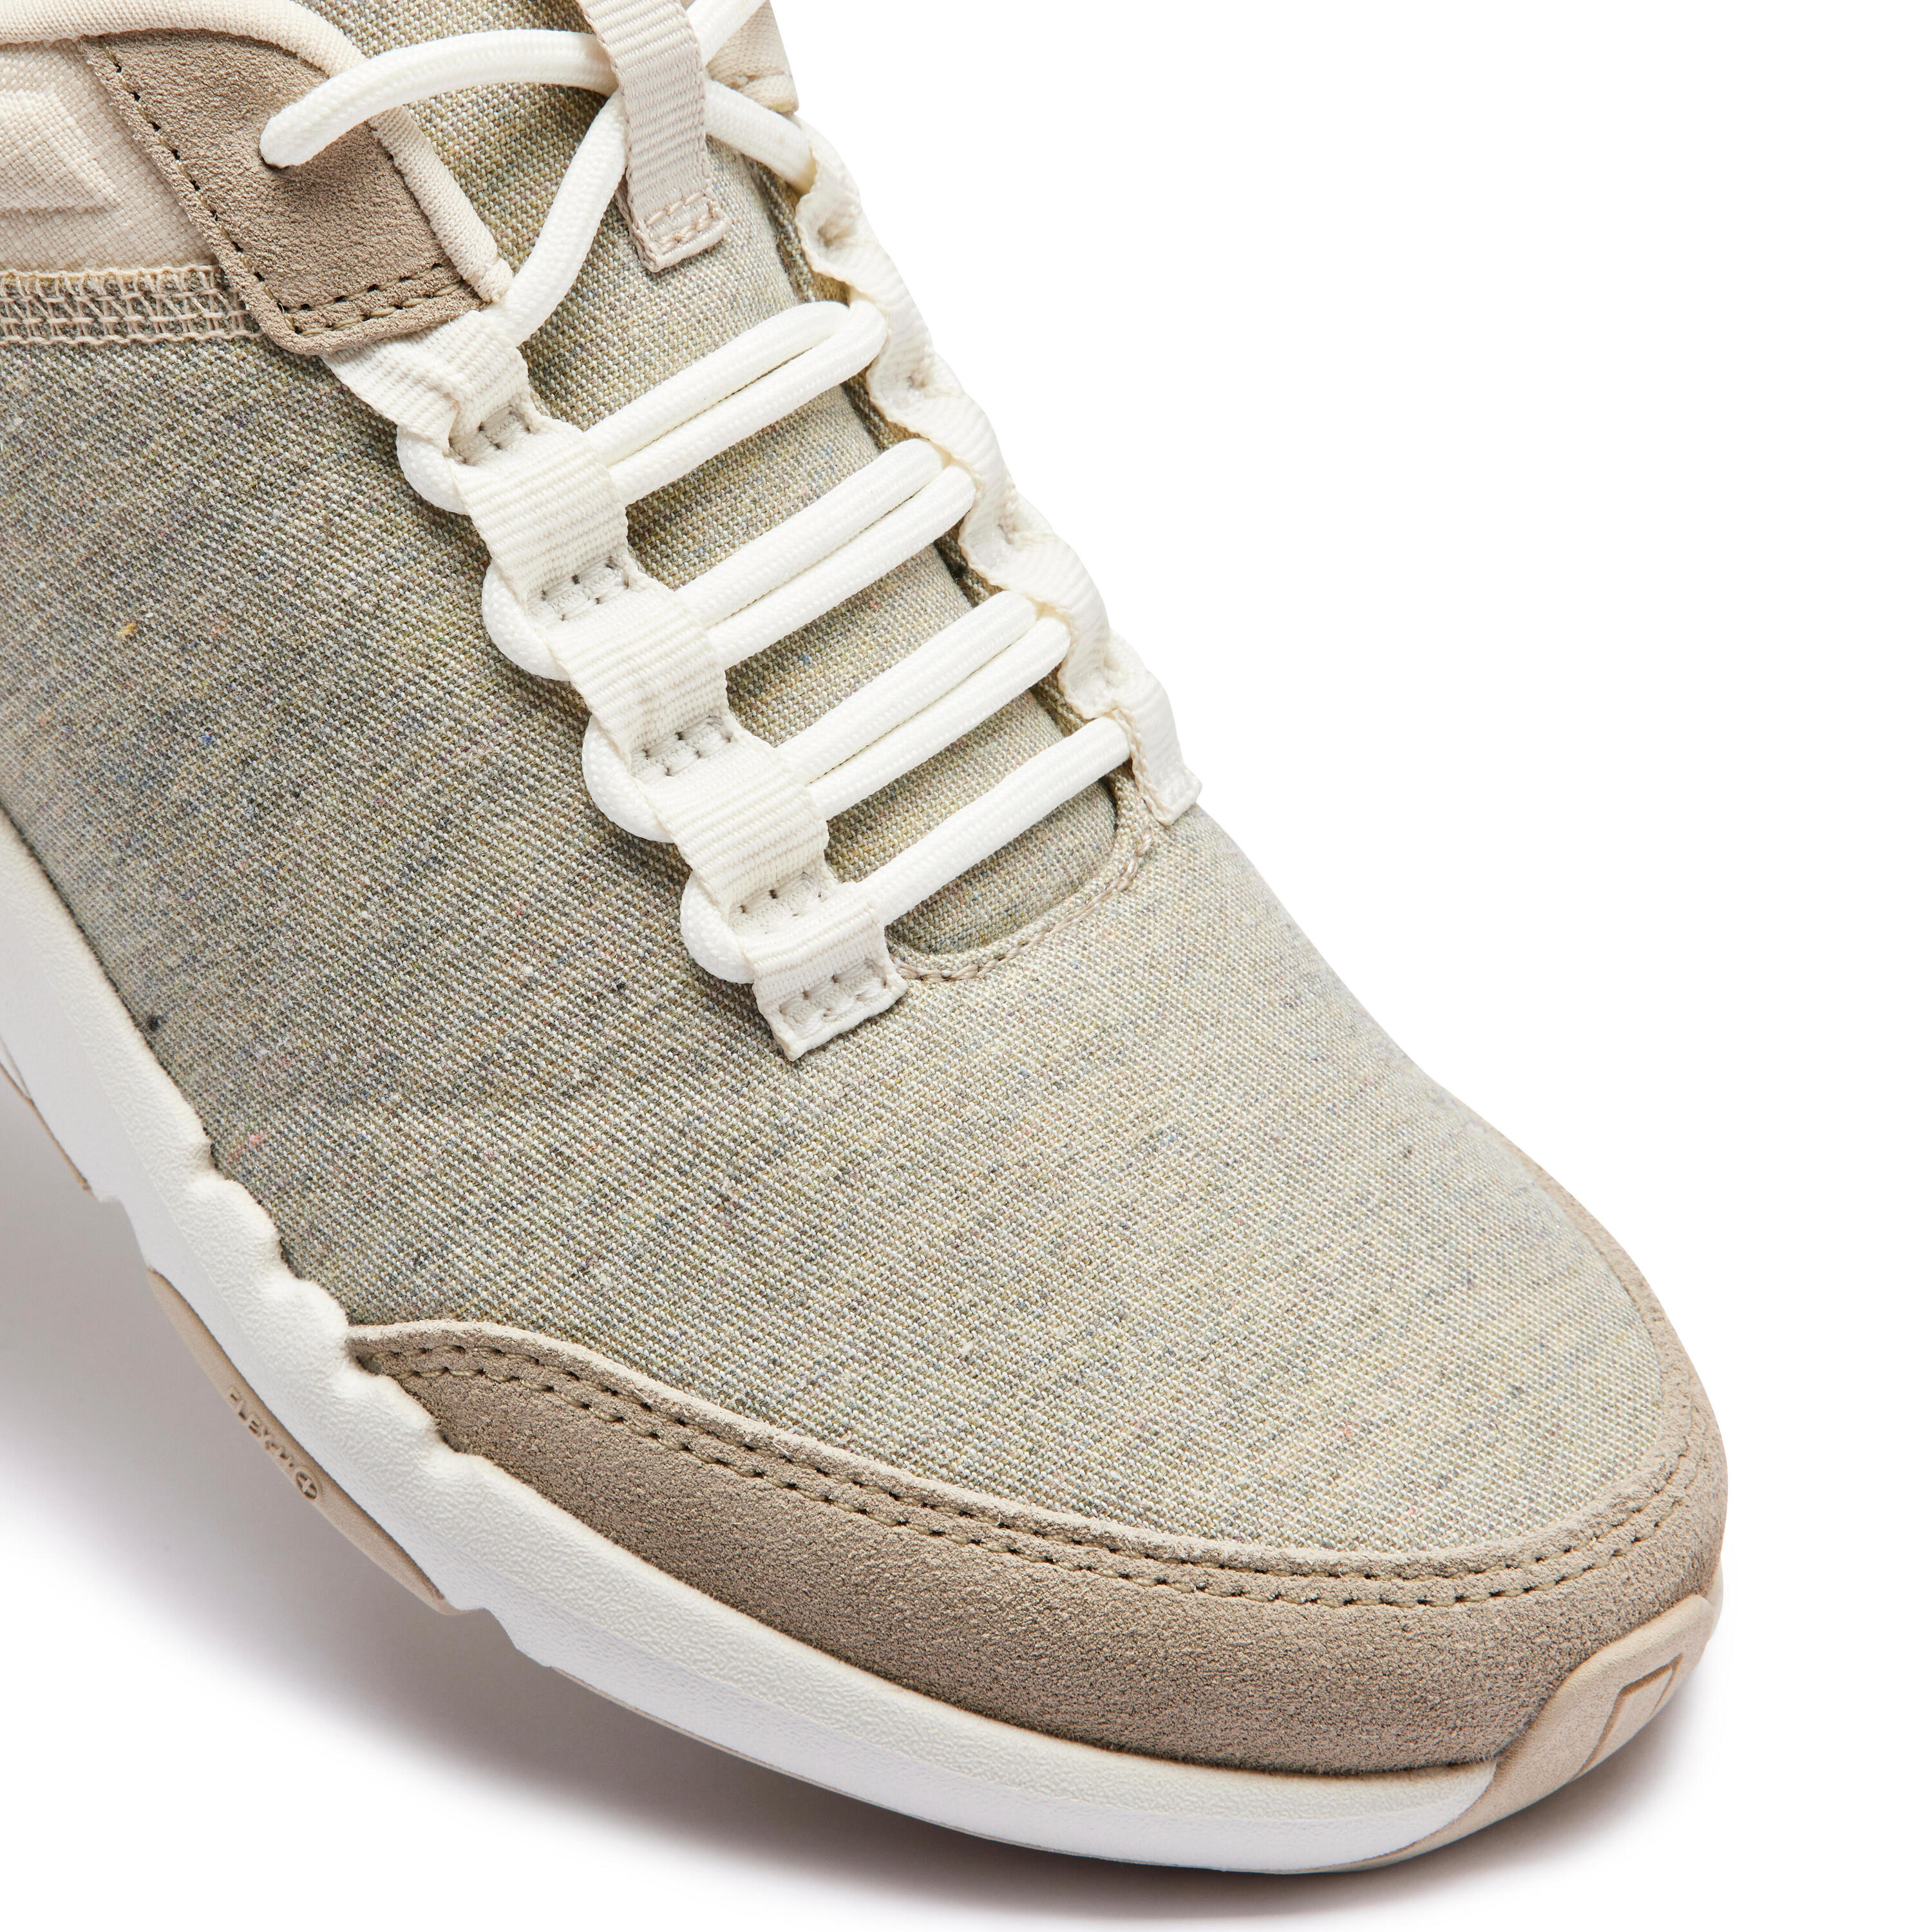 Walk Active women's urban walking shoes - grey/beige 3/7